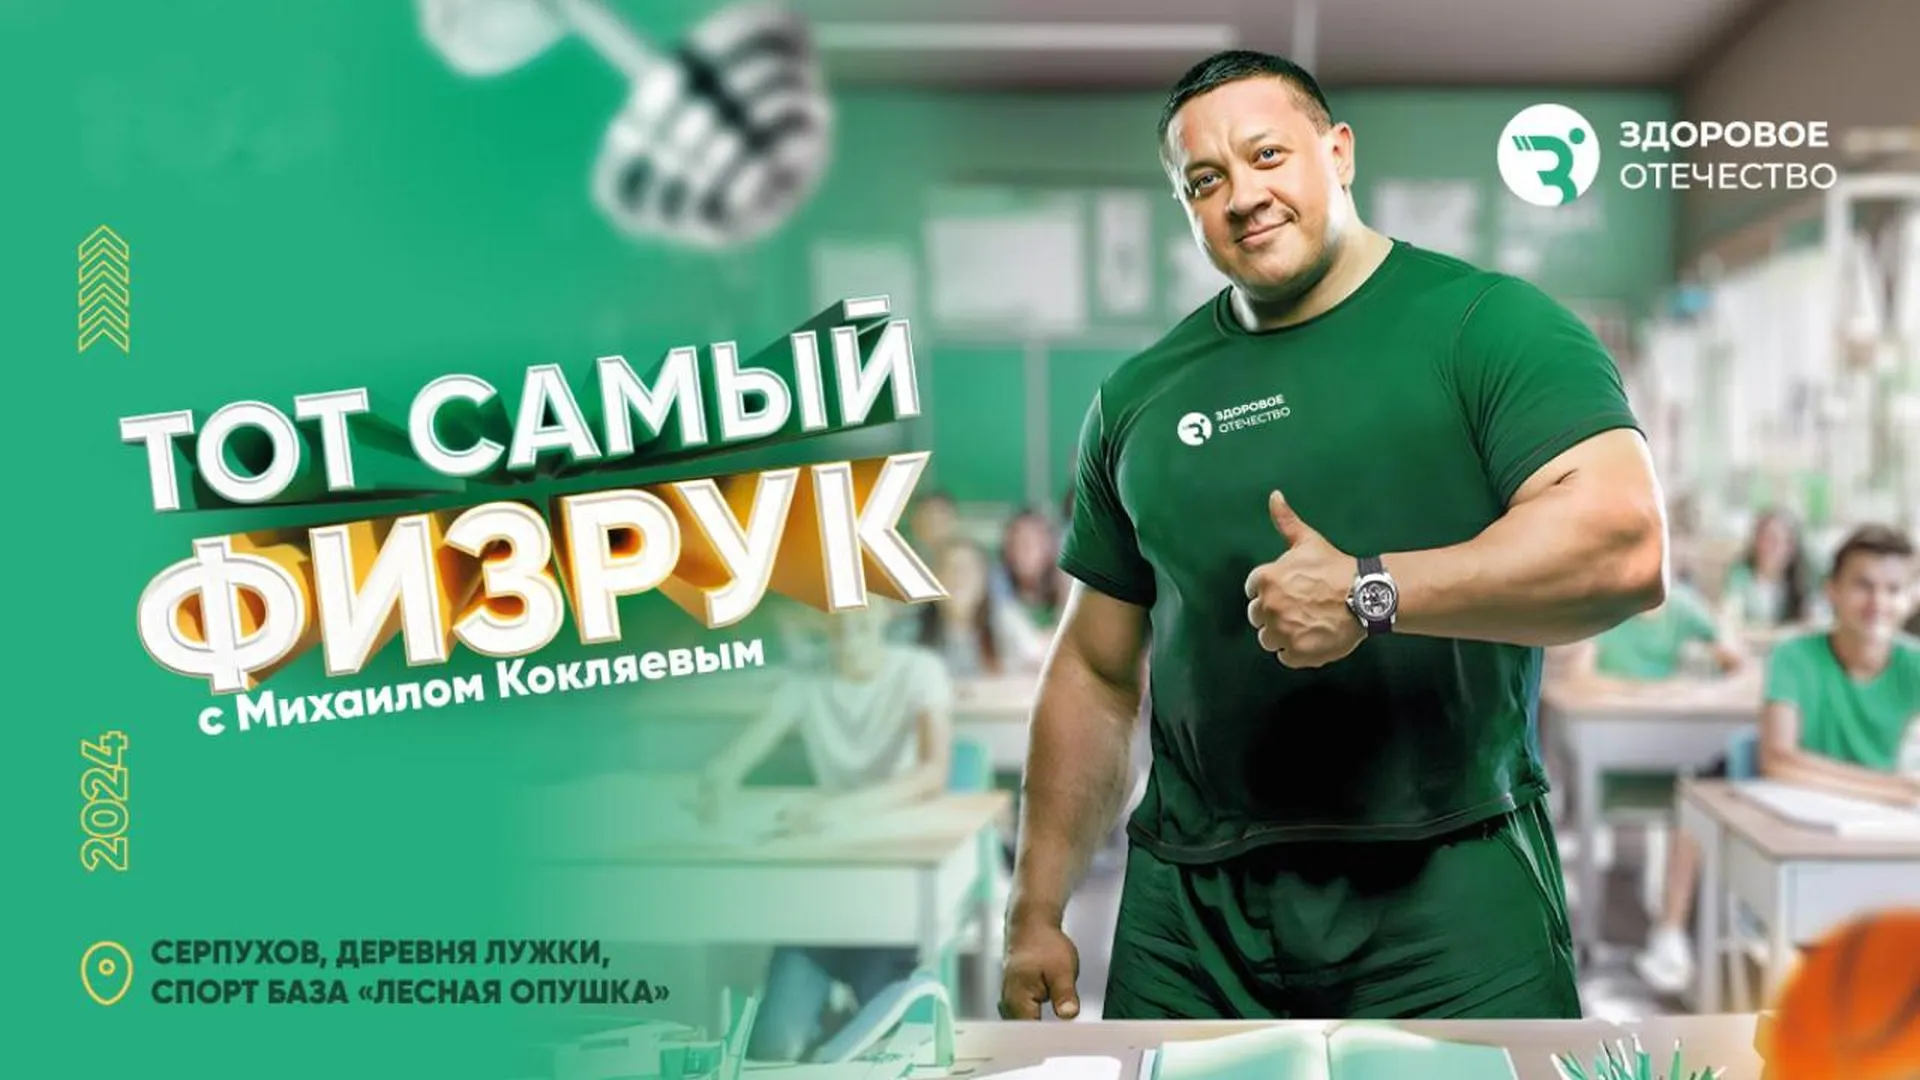 Двадцать девять команд примут участие в спортивном турнире «Тот самый физрук» в Серпухове